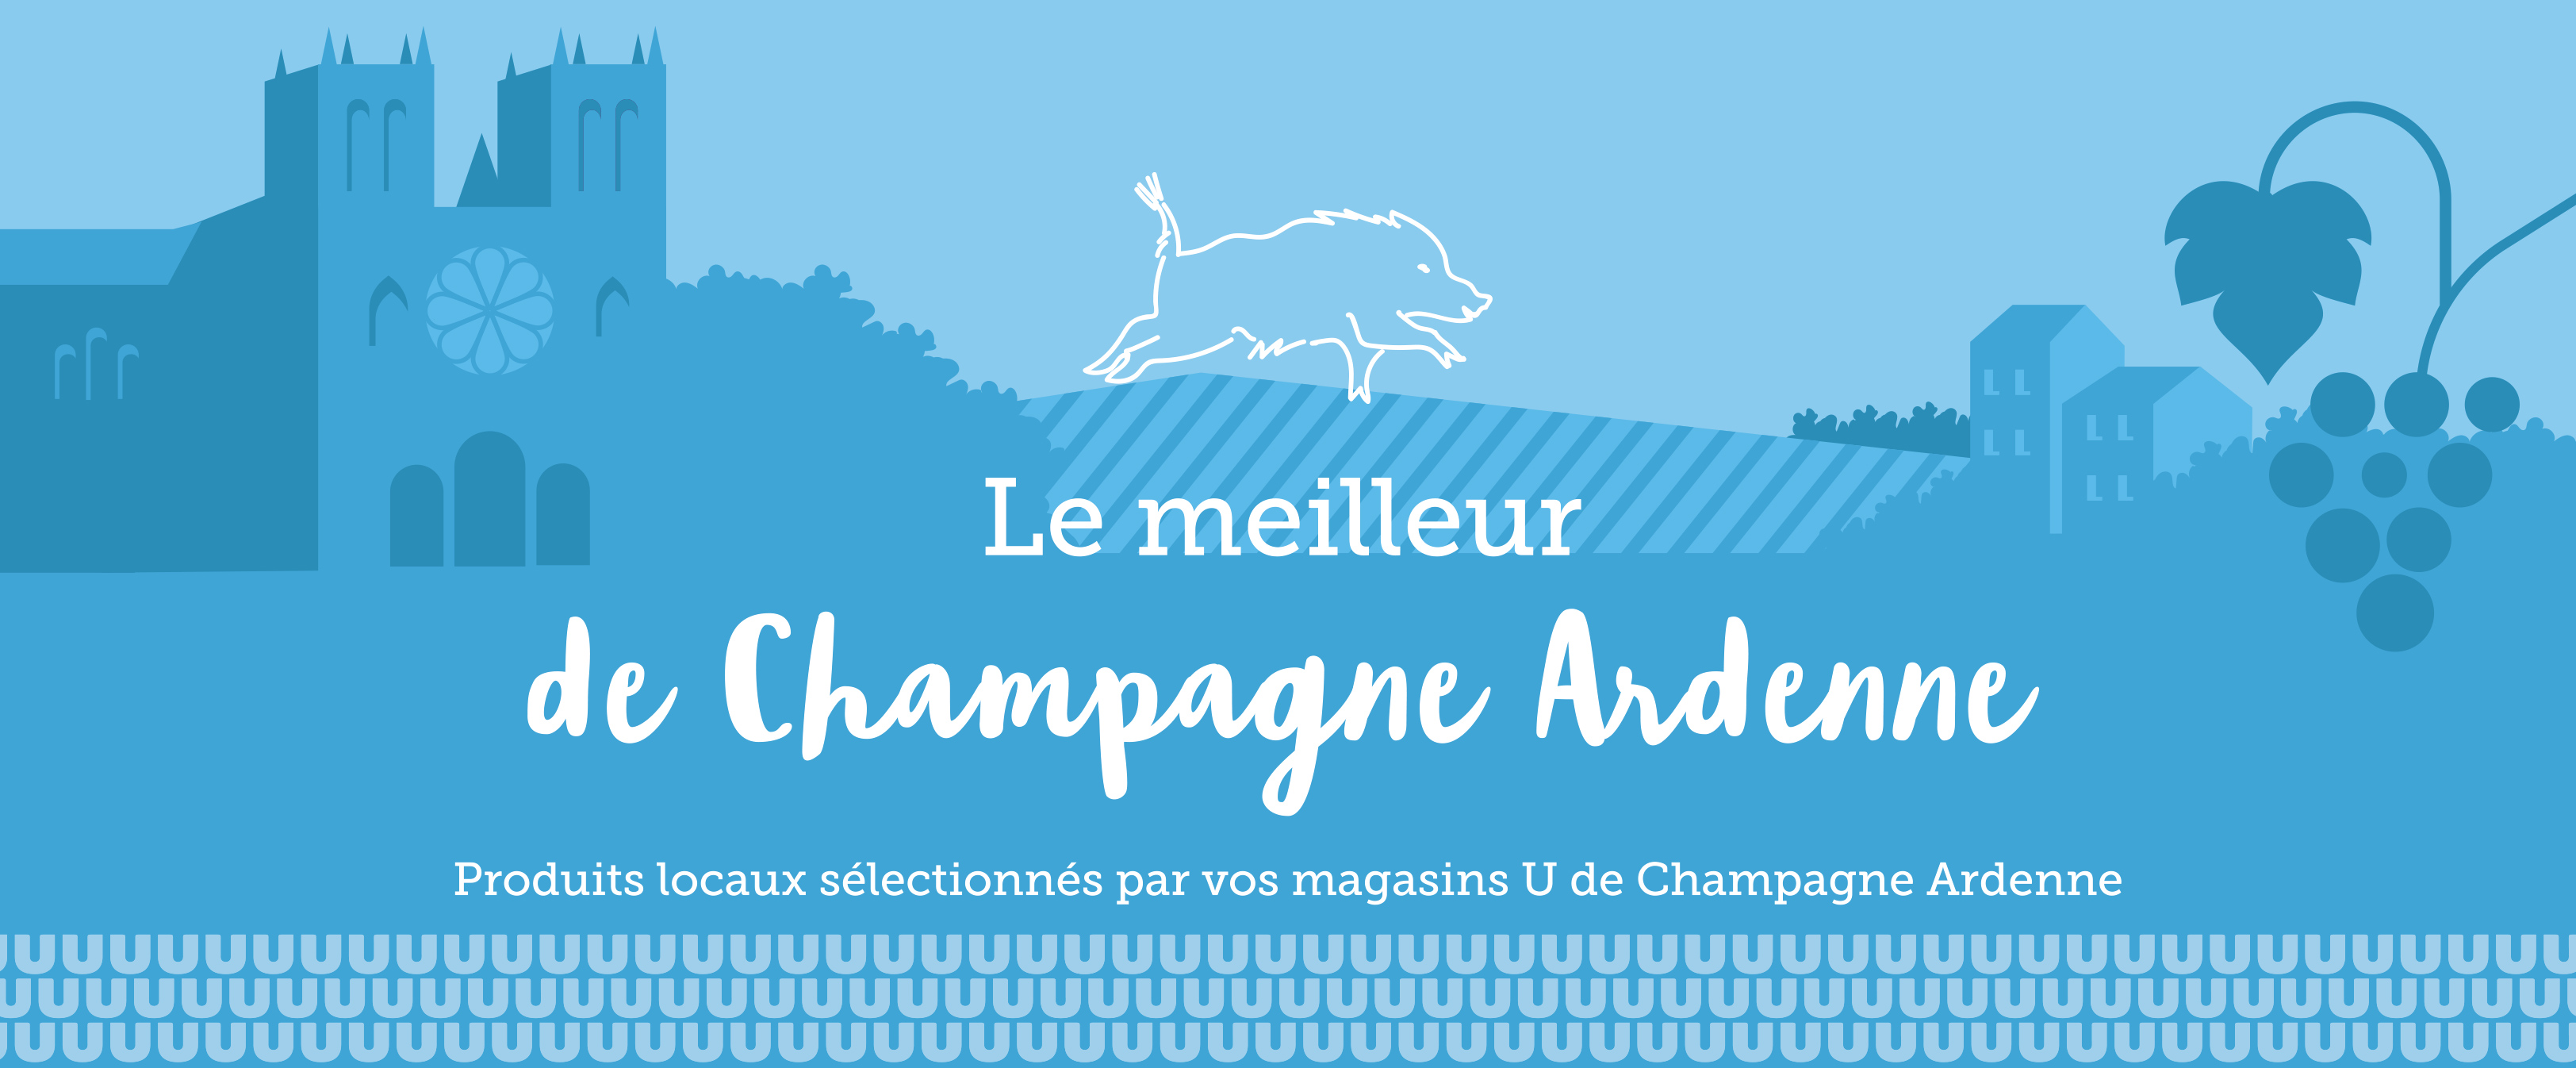 Le meilleur de Champagne-Ardenne